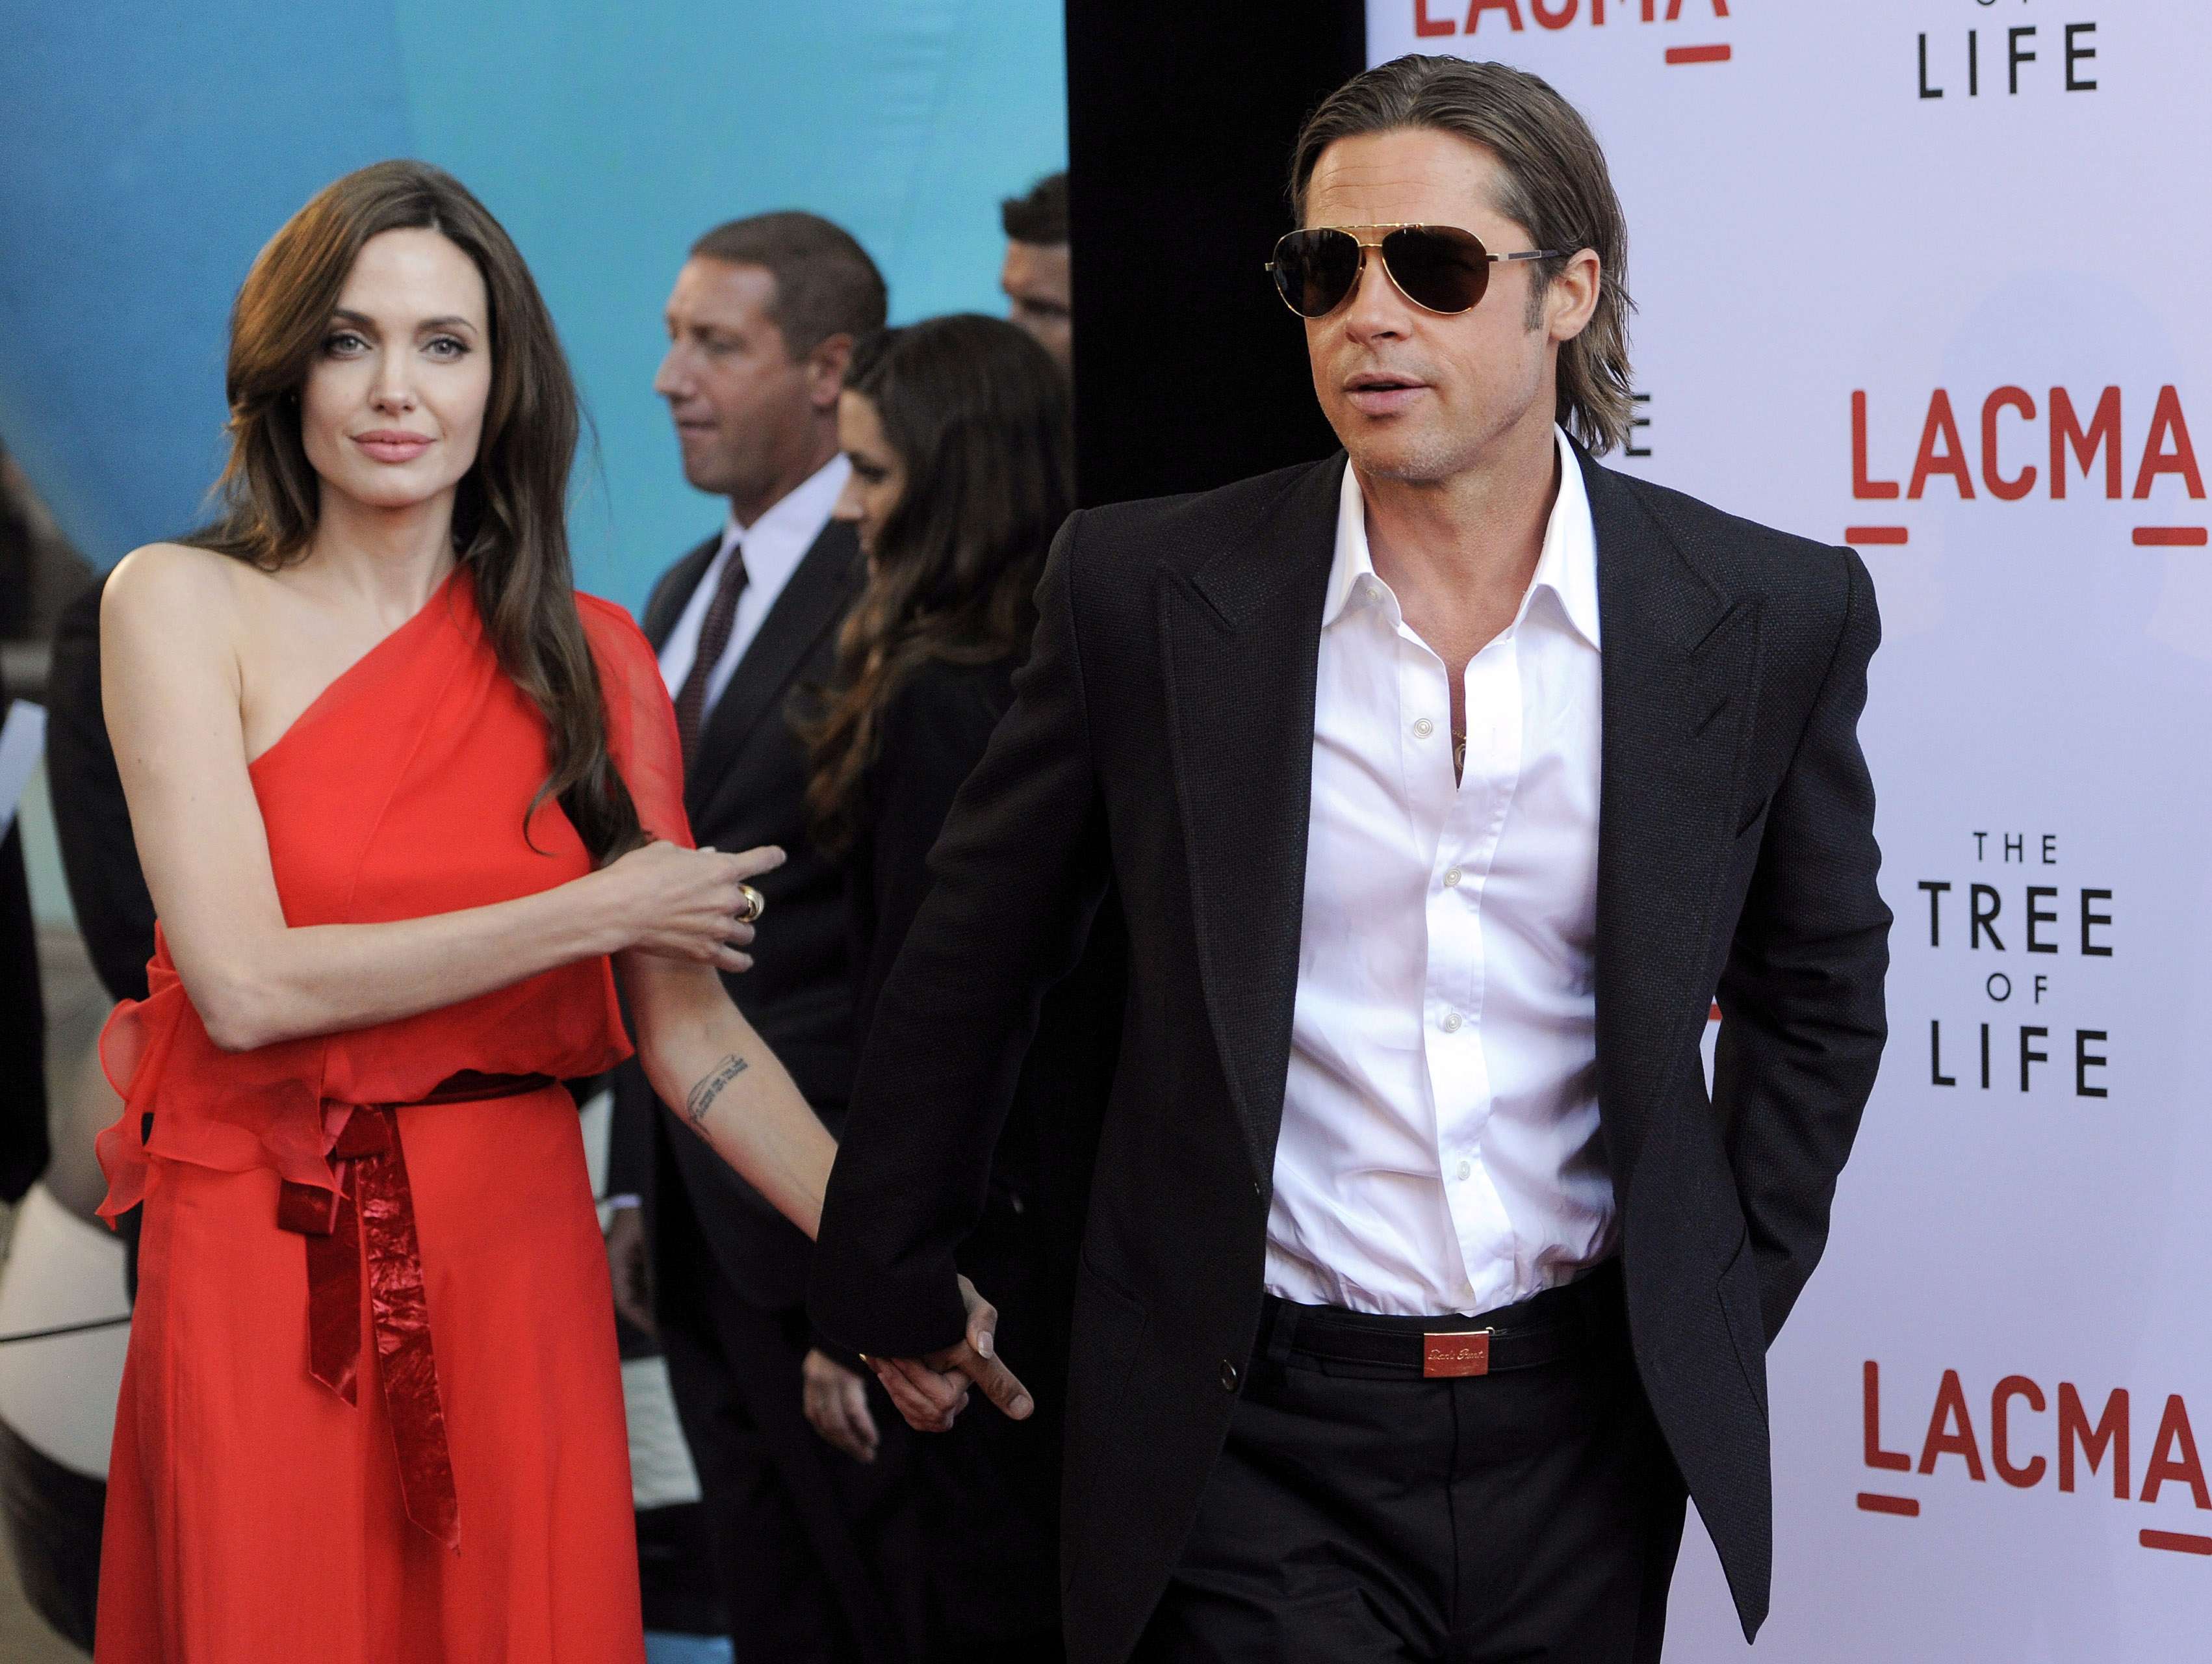 Angelina Jolie, Intervju, Brad Pitt, Skådespelare, Privat, Paparazzi, Hollywood, Barn, USA